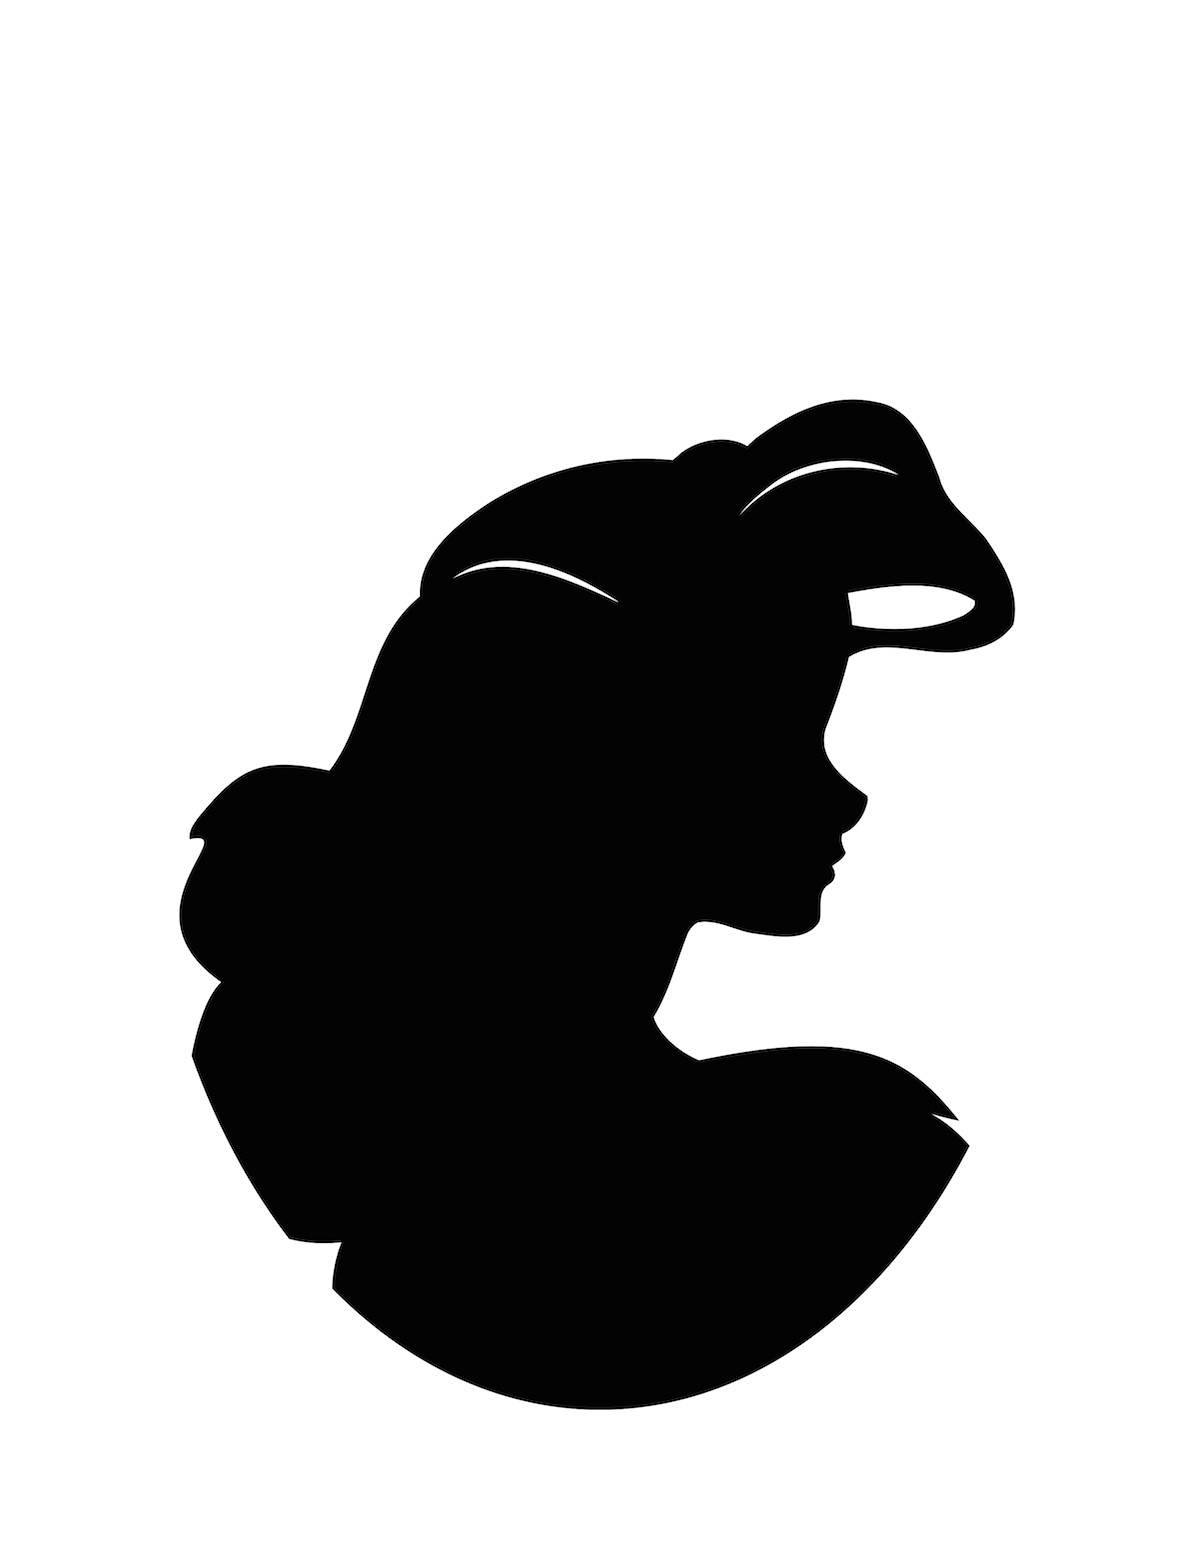 Download Ariel clipart silhouette, Ariel silhouette Transparent ...